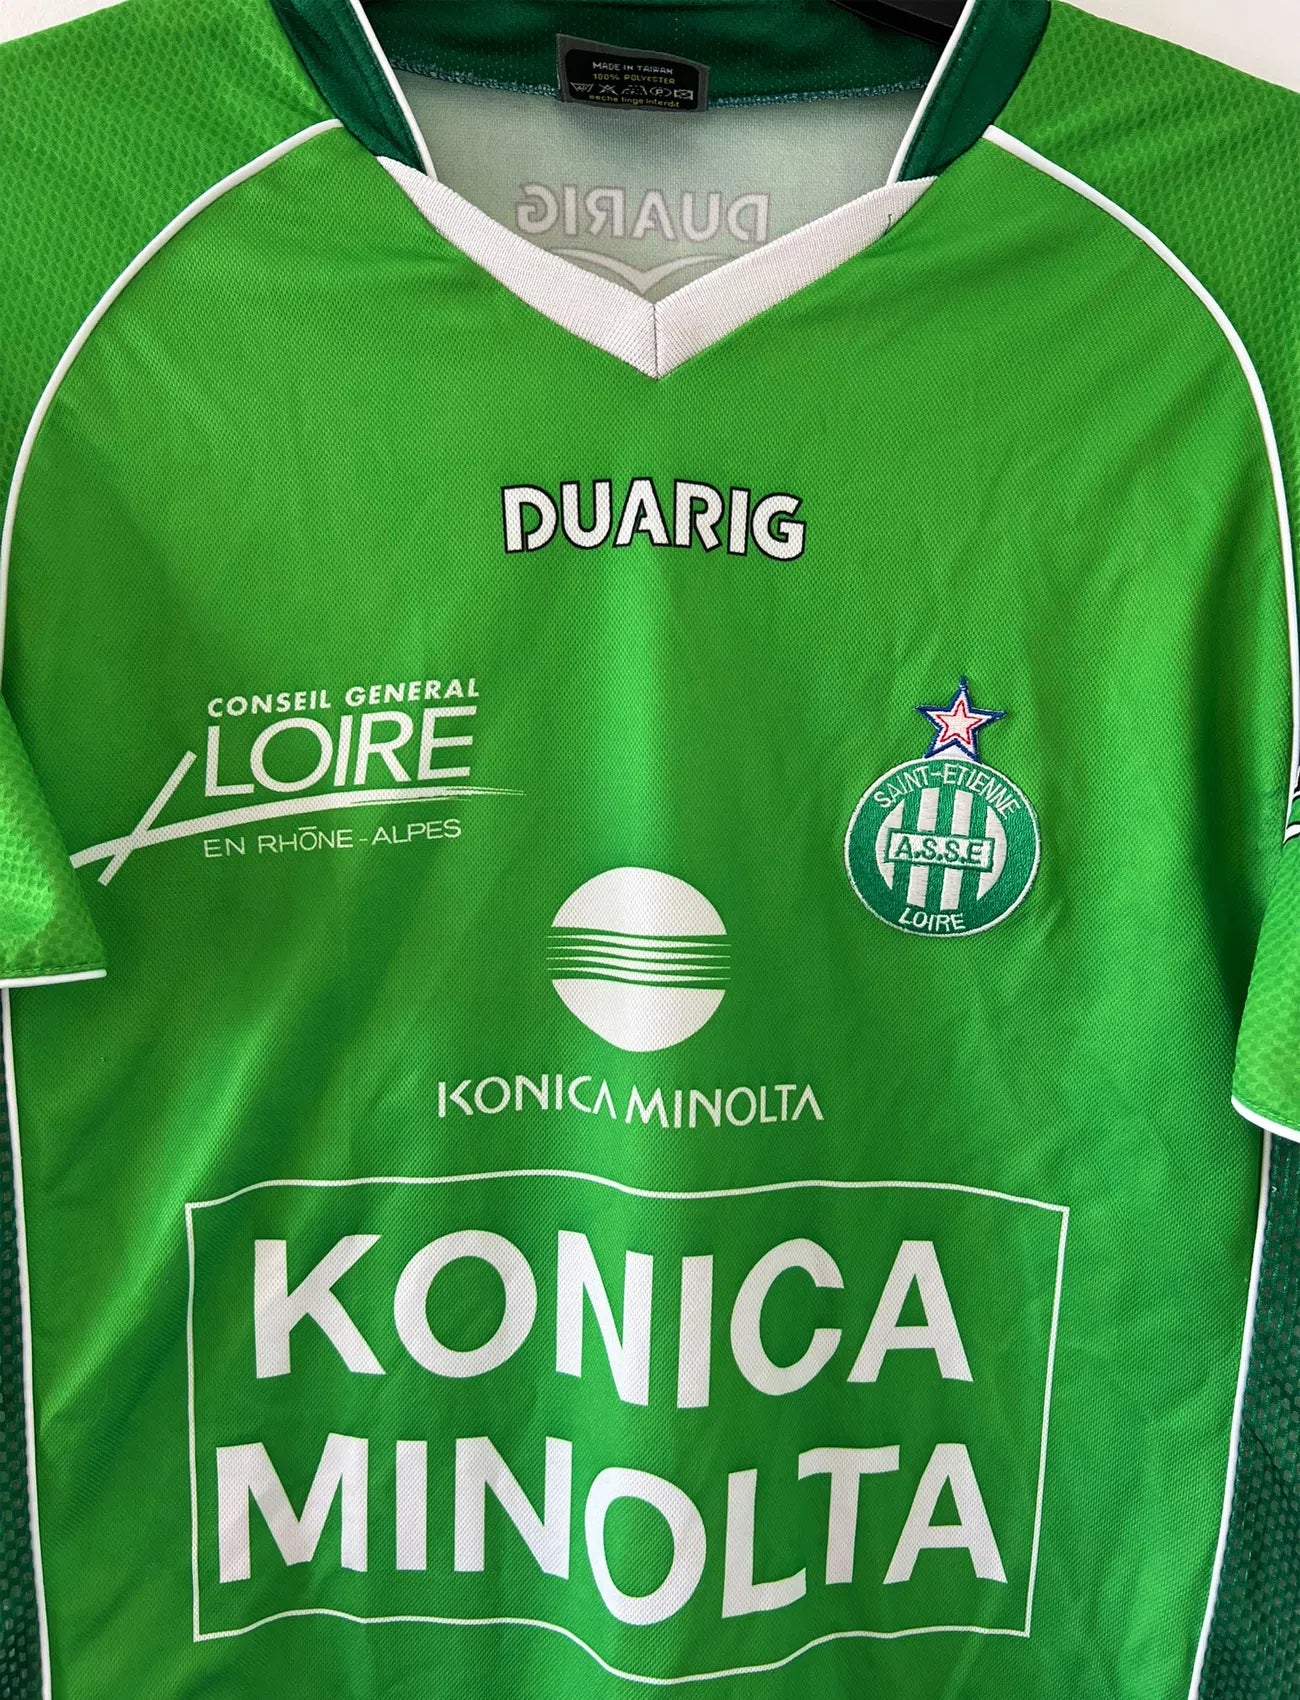 Maillot de foot vintage domicile de l'ASSE de la saison 2004-2005. Le maillot est de couleur vert et blanc. On peut retrouver l'équipementier duarig et le sponsor Konica Minolta. Il s'agit d'un maillot authentique